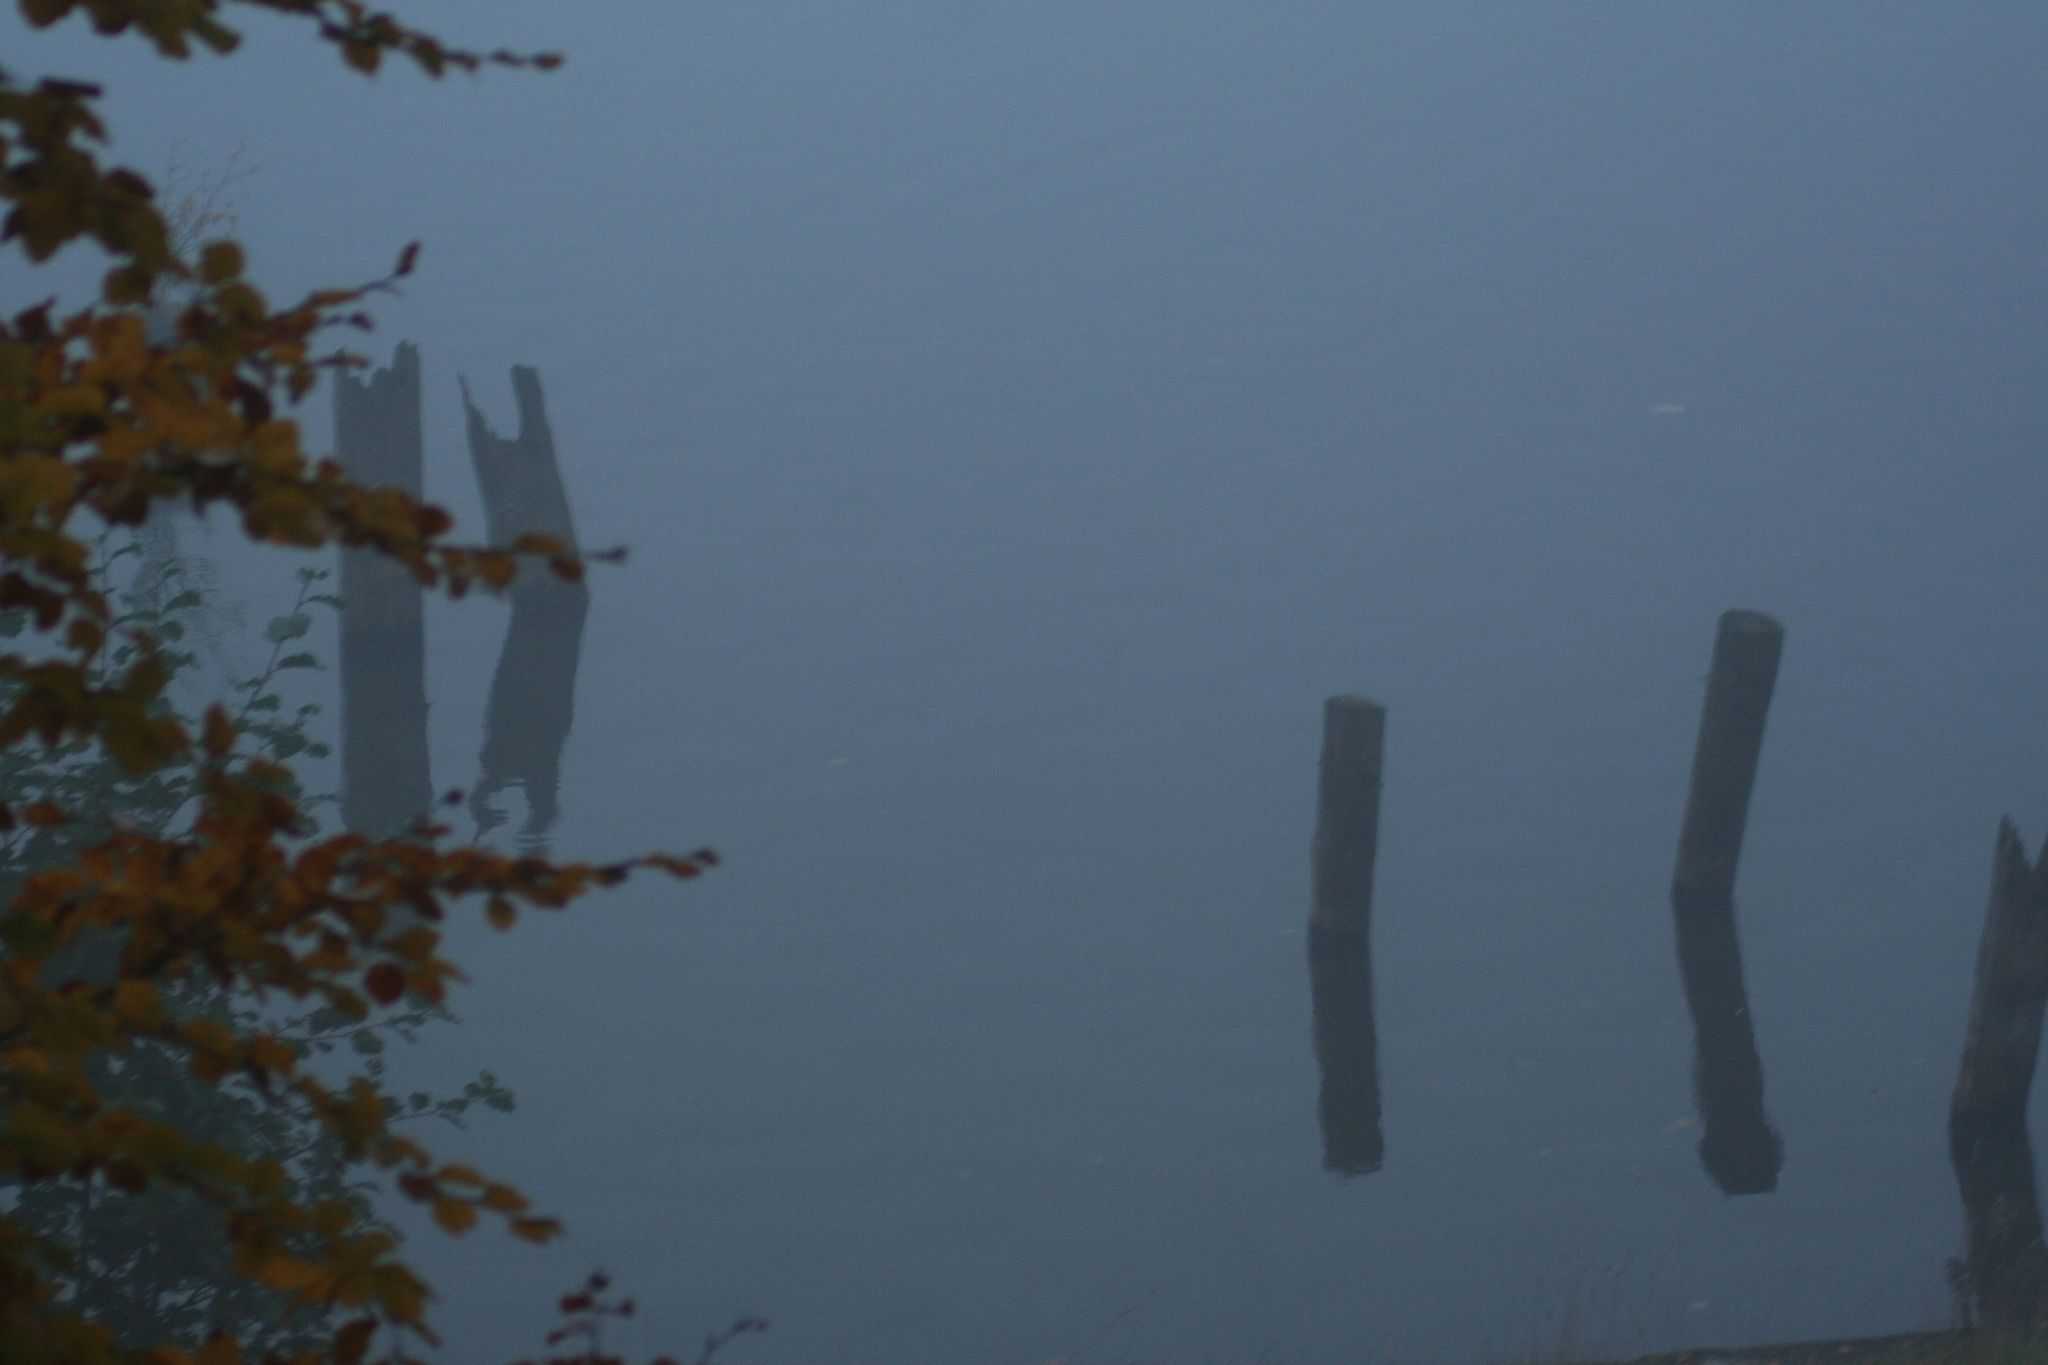 listopadowe impresje - jezioro, odbija się trochę drzew żółtymi liśćmi i palik, większość zdjęcia tonie we mgle